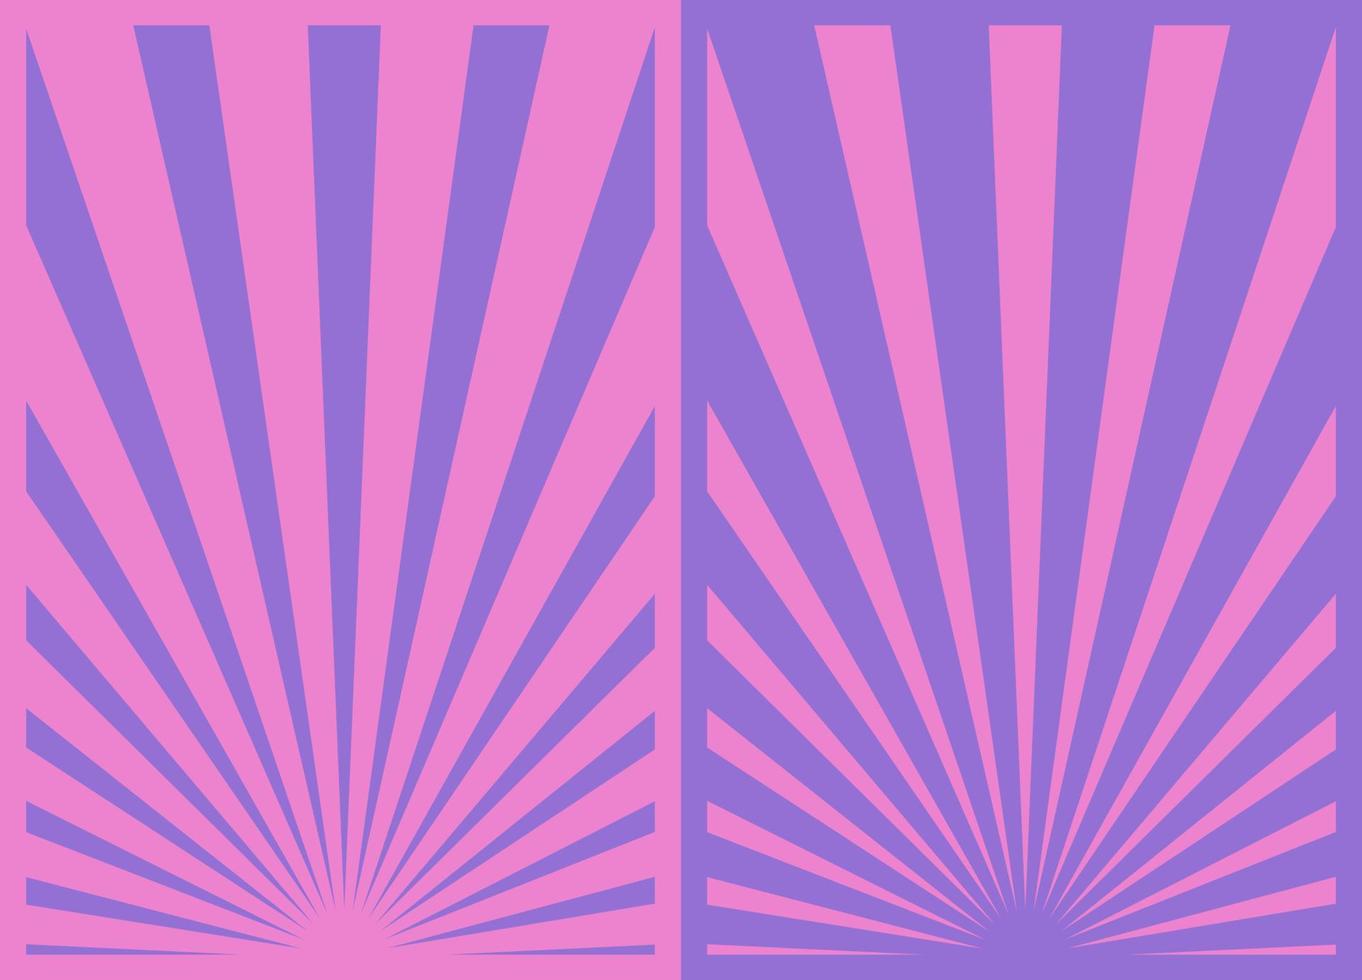 årgång lila rosa sunburst Ränder affisch uppsättning, mall med strålar centrerad på de botten. retro inspirerad tecknad serie vertikal affischer. vektor